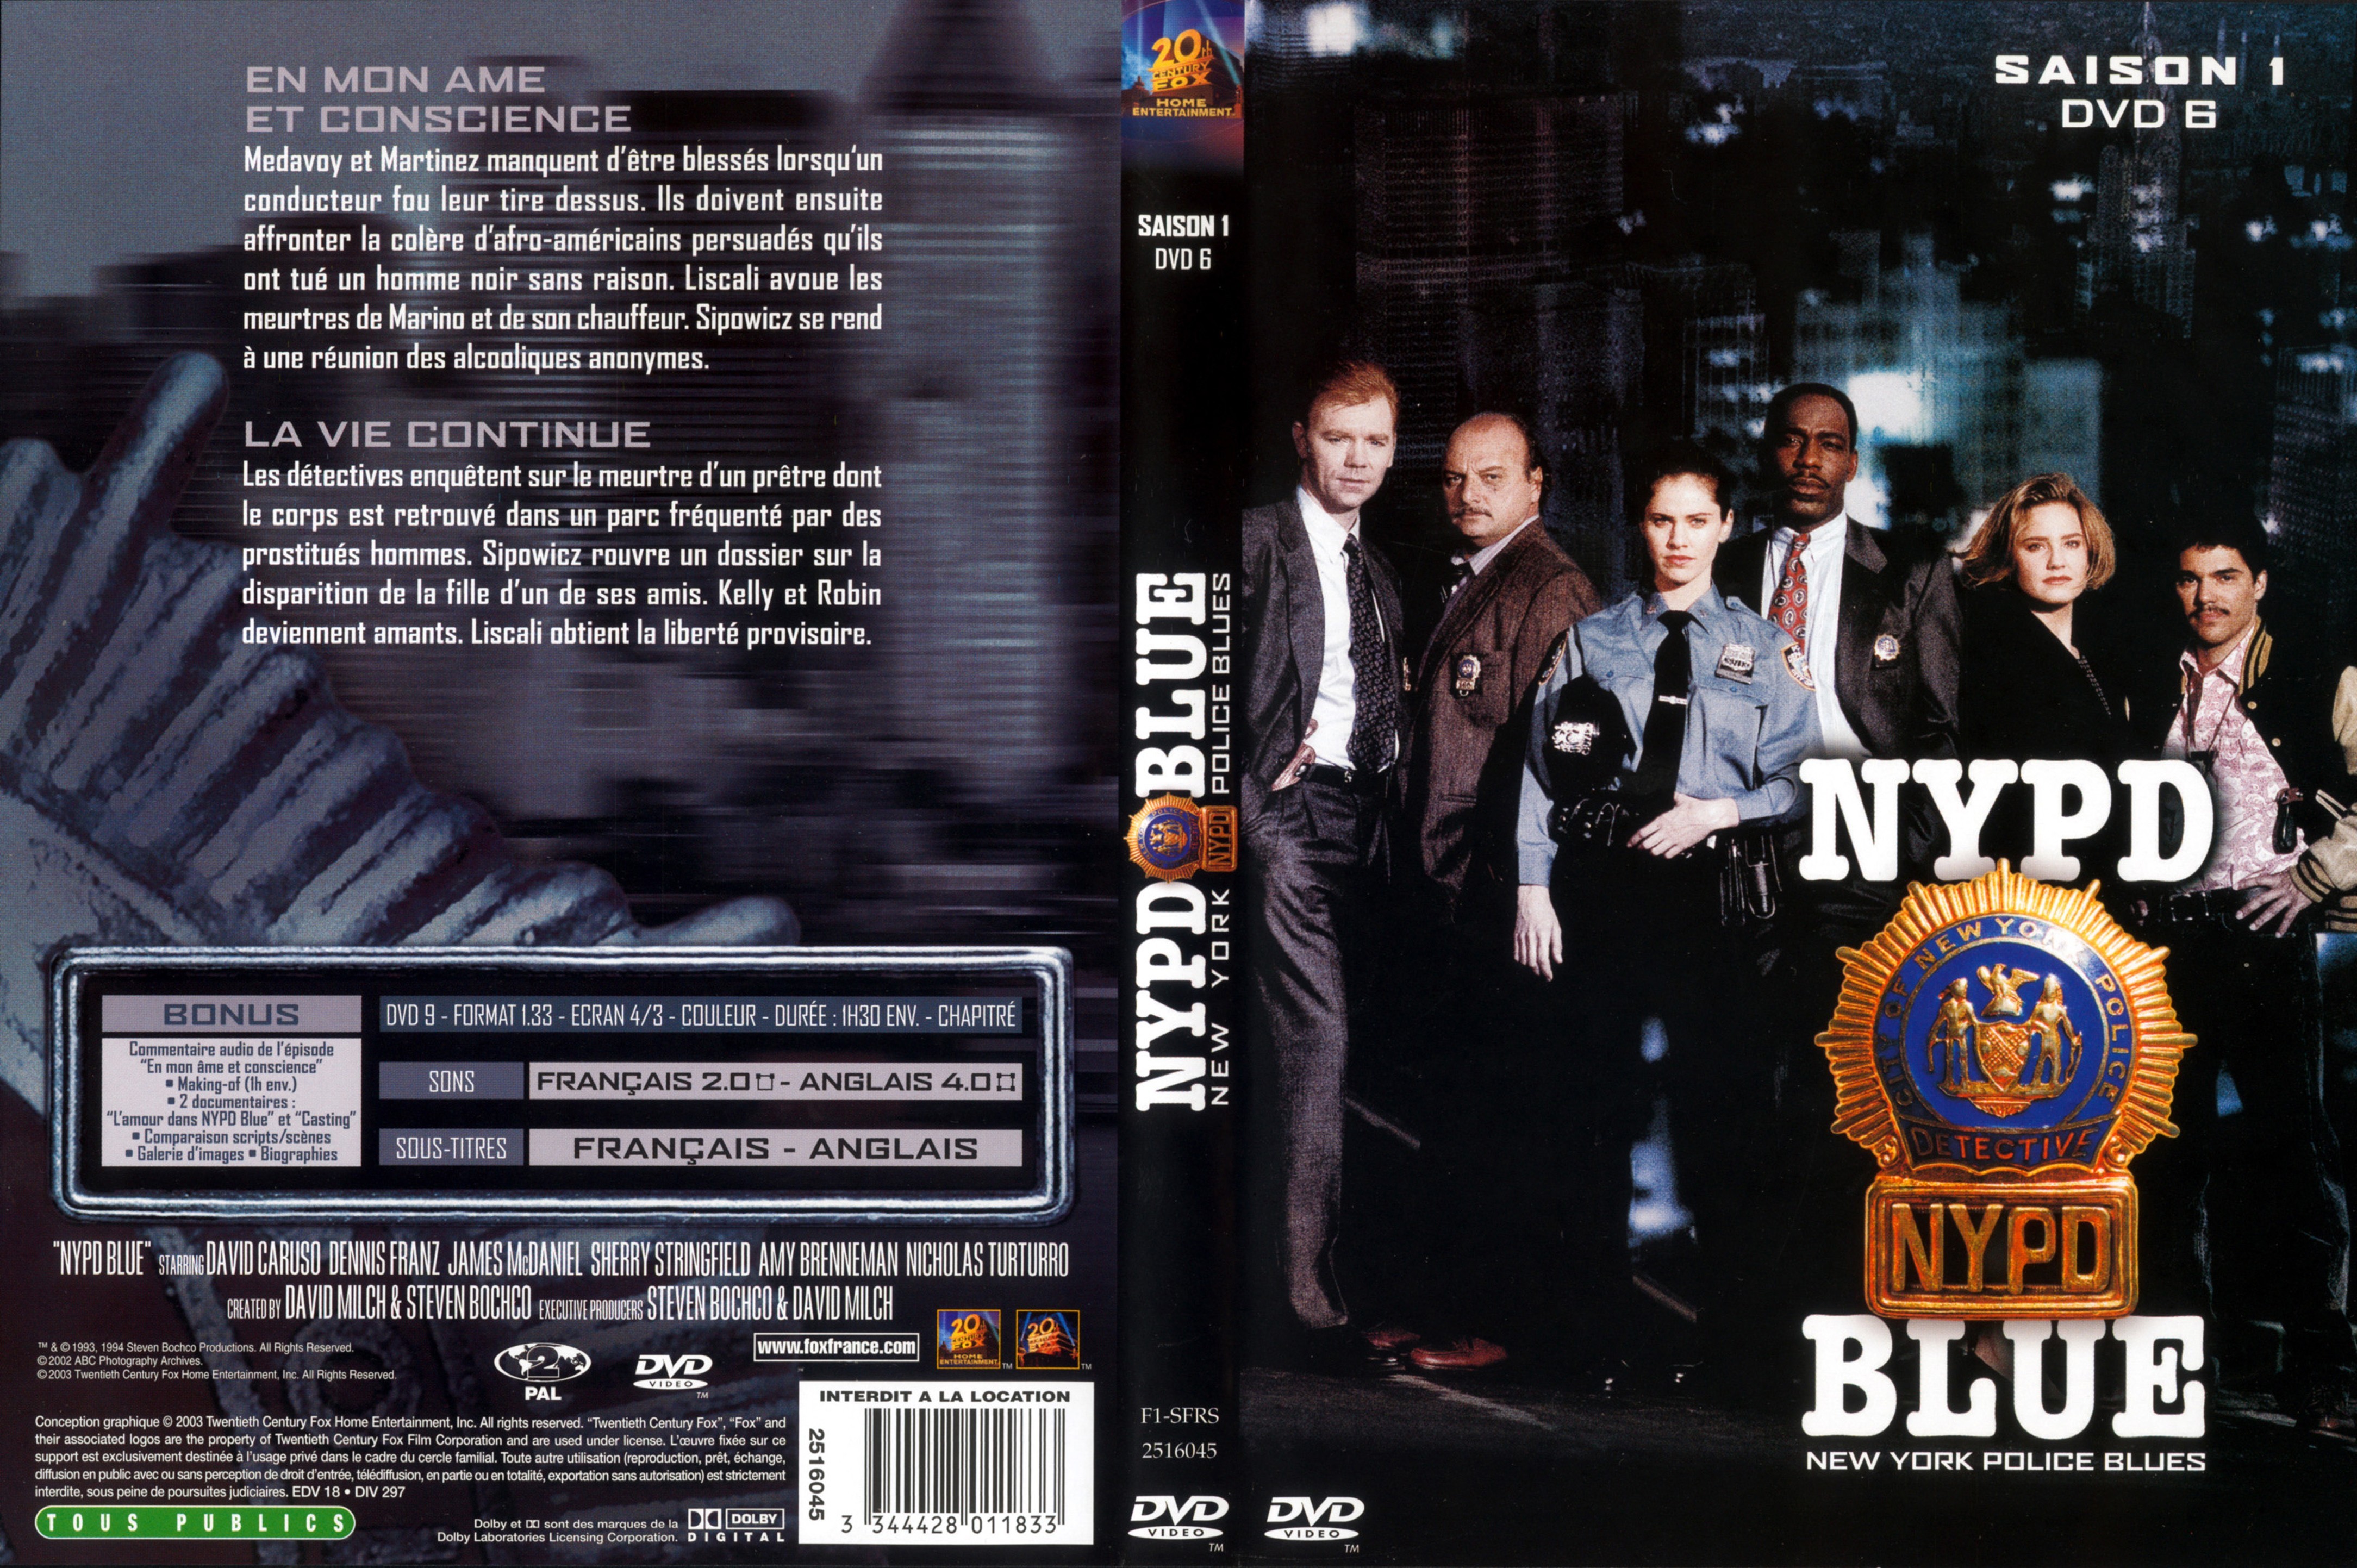 Jaquette DVD NYPD Blue saison 01 dvd 06